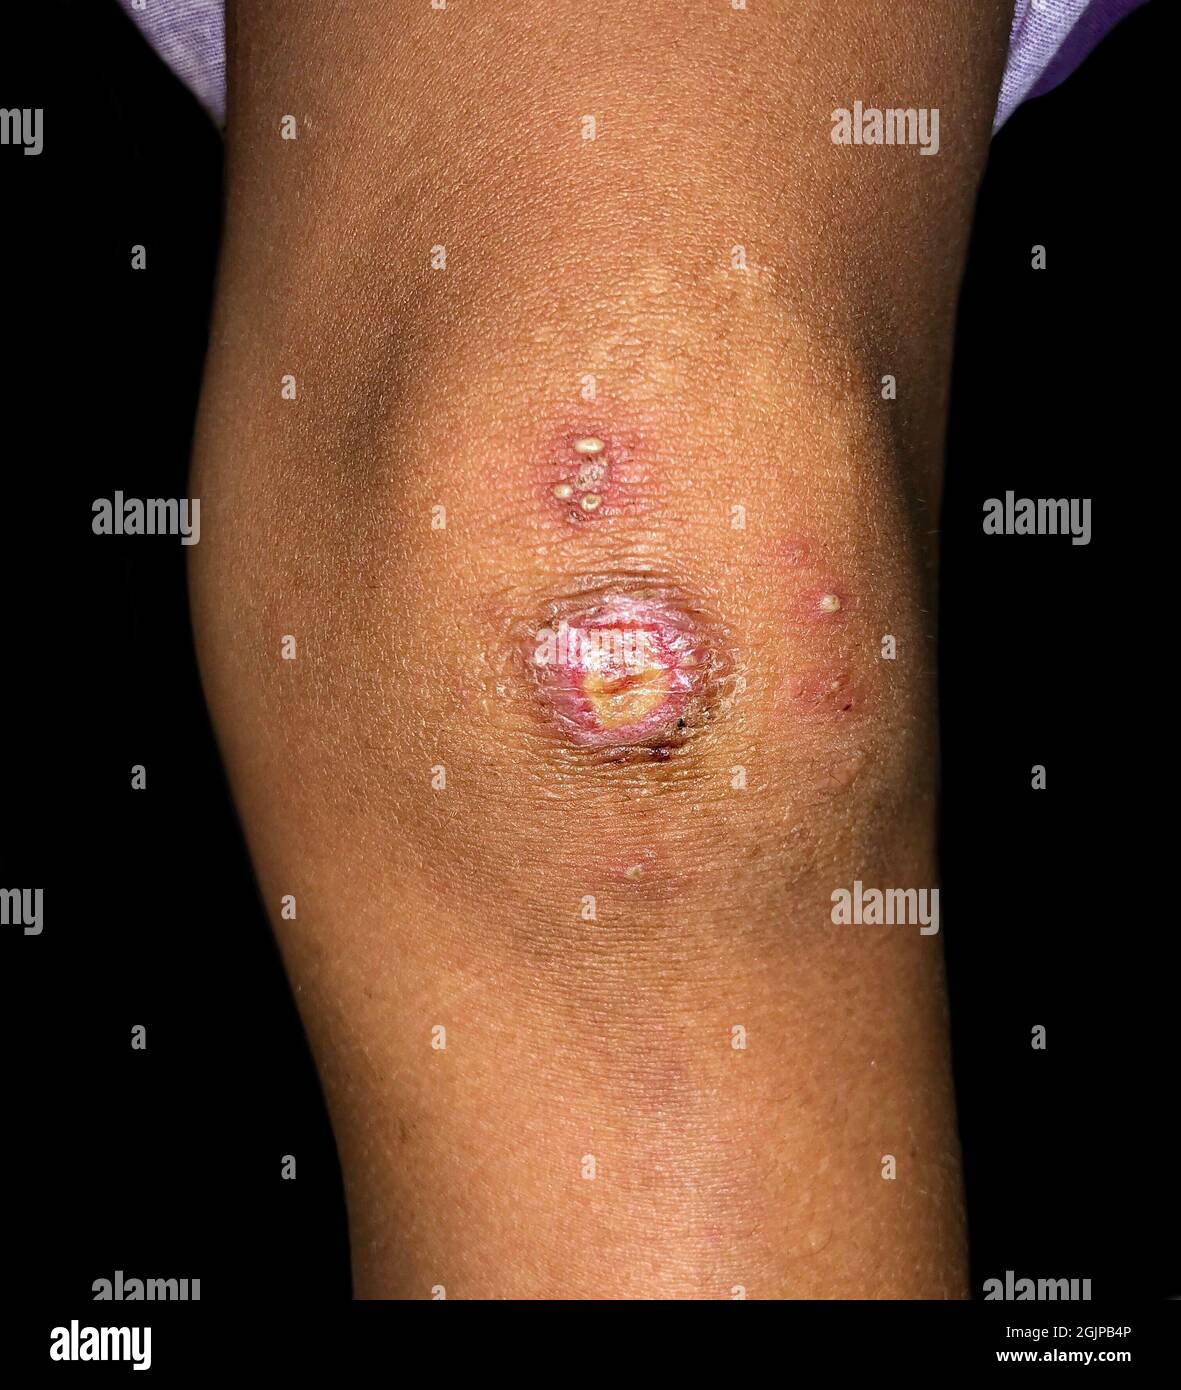 Furunkel oder Staphylokokken-Infektion am Bein eines asiatischen Kindes. Auch als kocht bezeichnet. Schmerzhafte Hautläsionen. Stockfoto